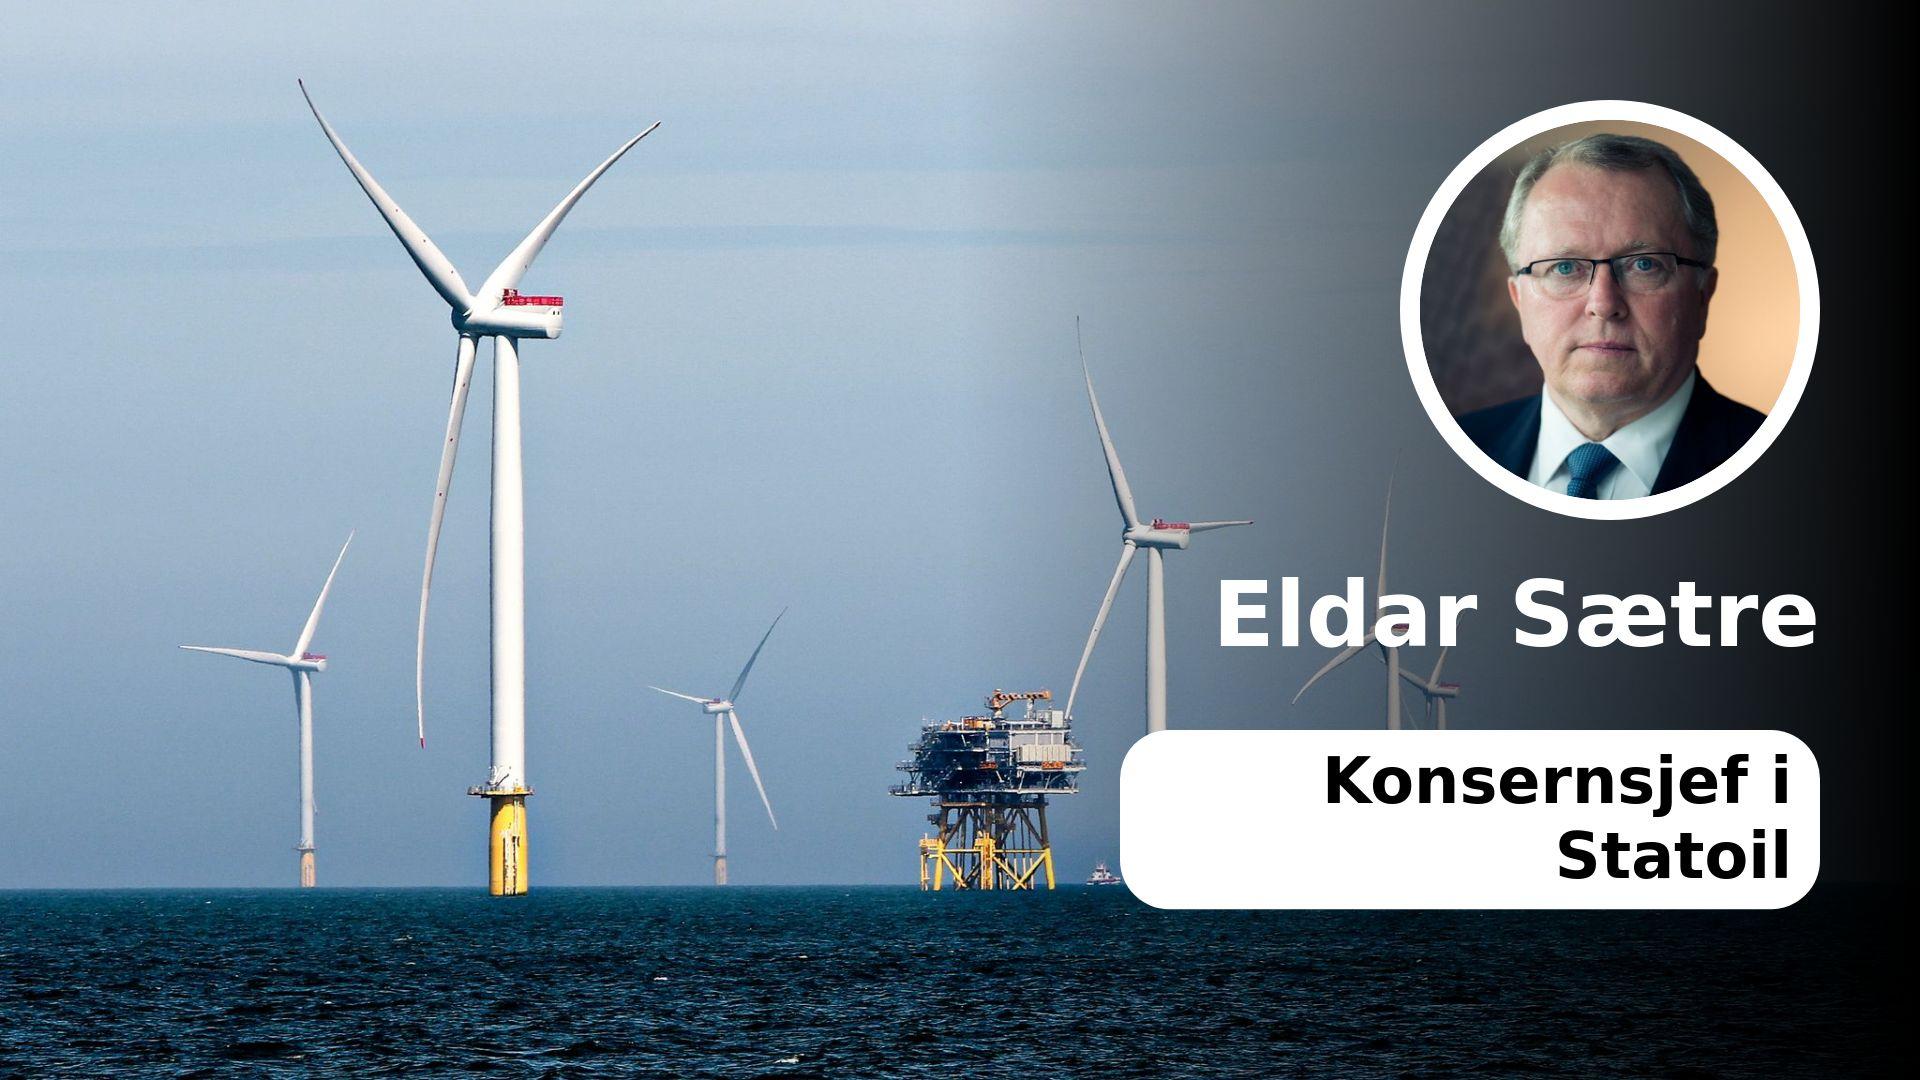  I Statoil er vi godt i gang med å etablere fornybar energi som en viktig og lønnsom del av vår virksomhet, skriver konsernsjef Eldar Sætre. Her fra vindmølleparken Dudgeon utenfor kysten av Storbritannia. 